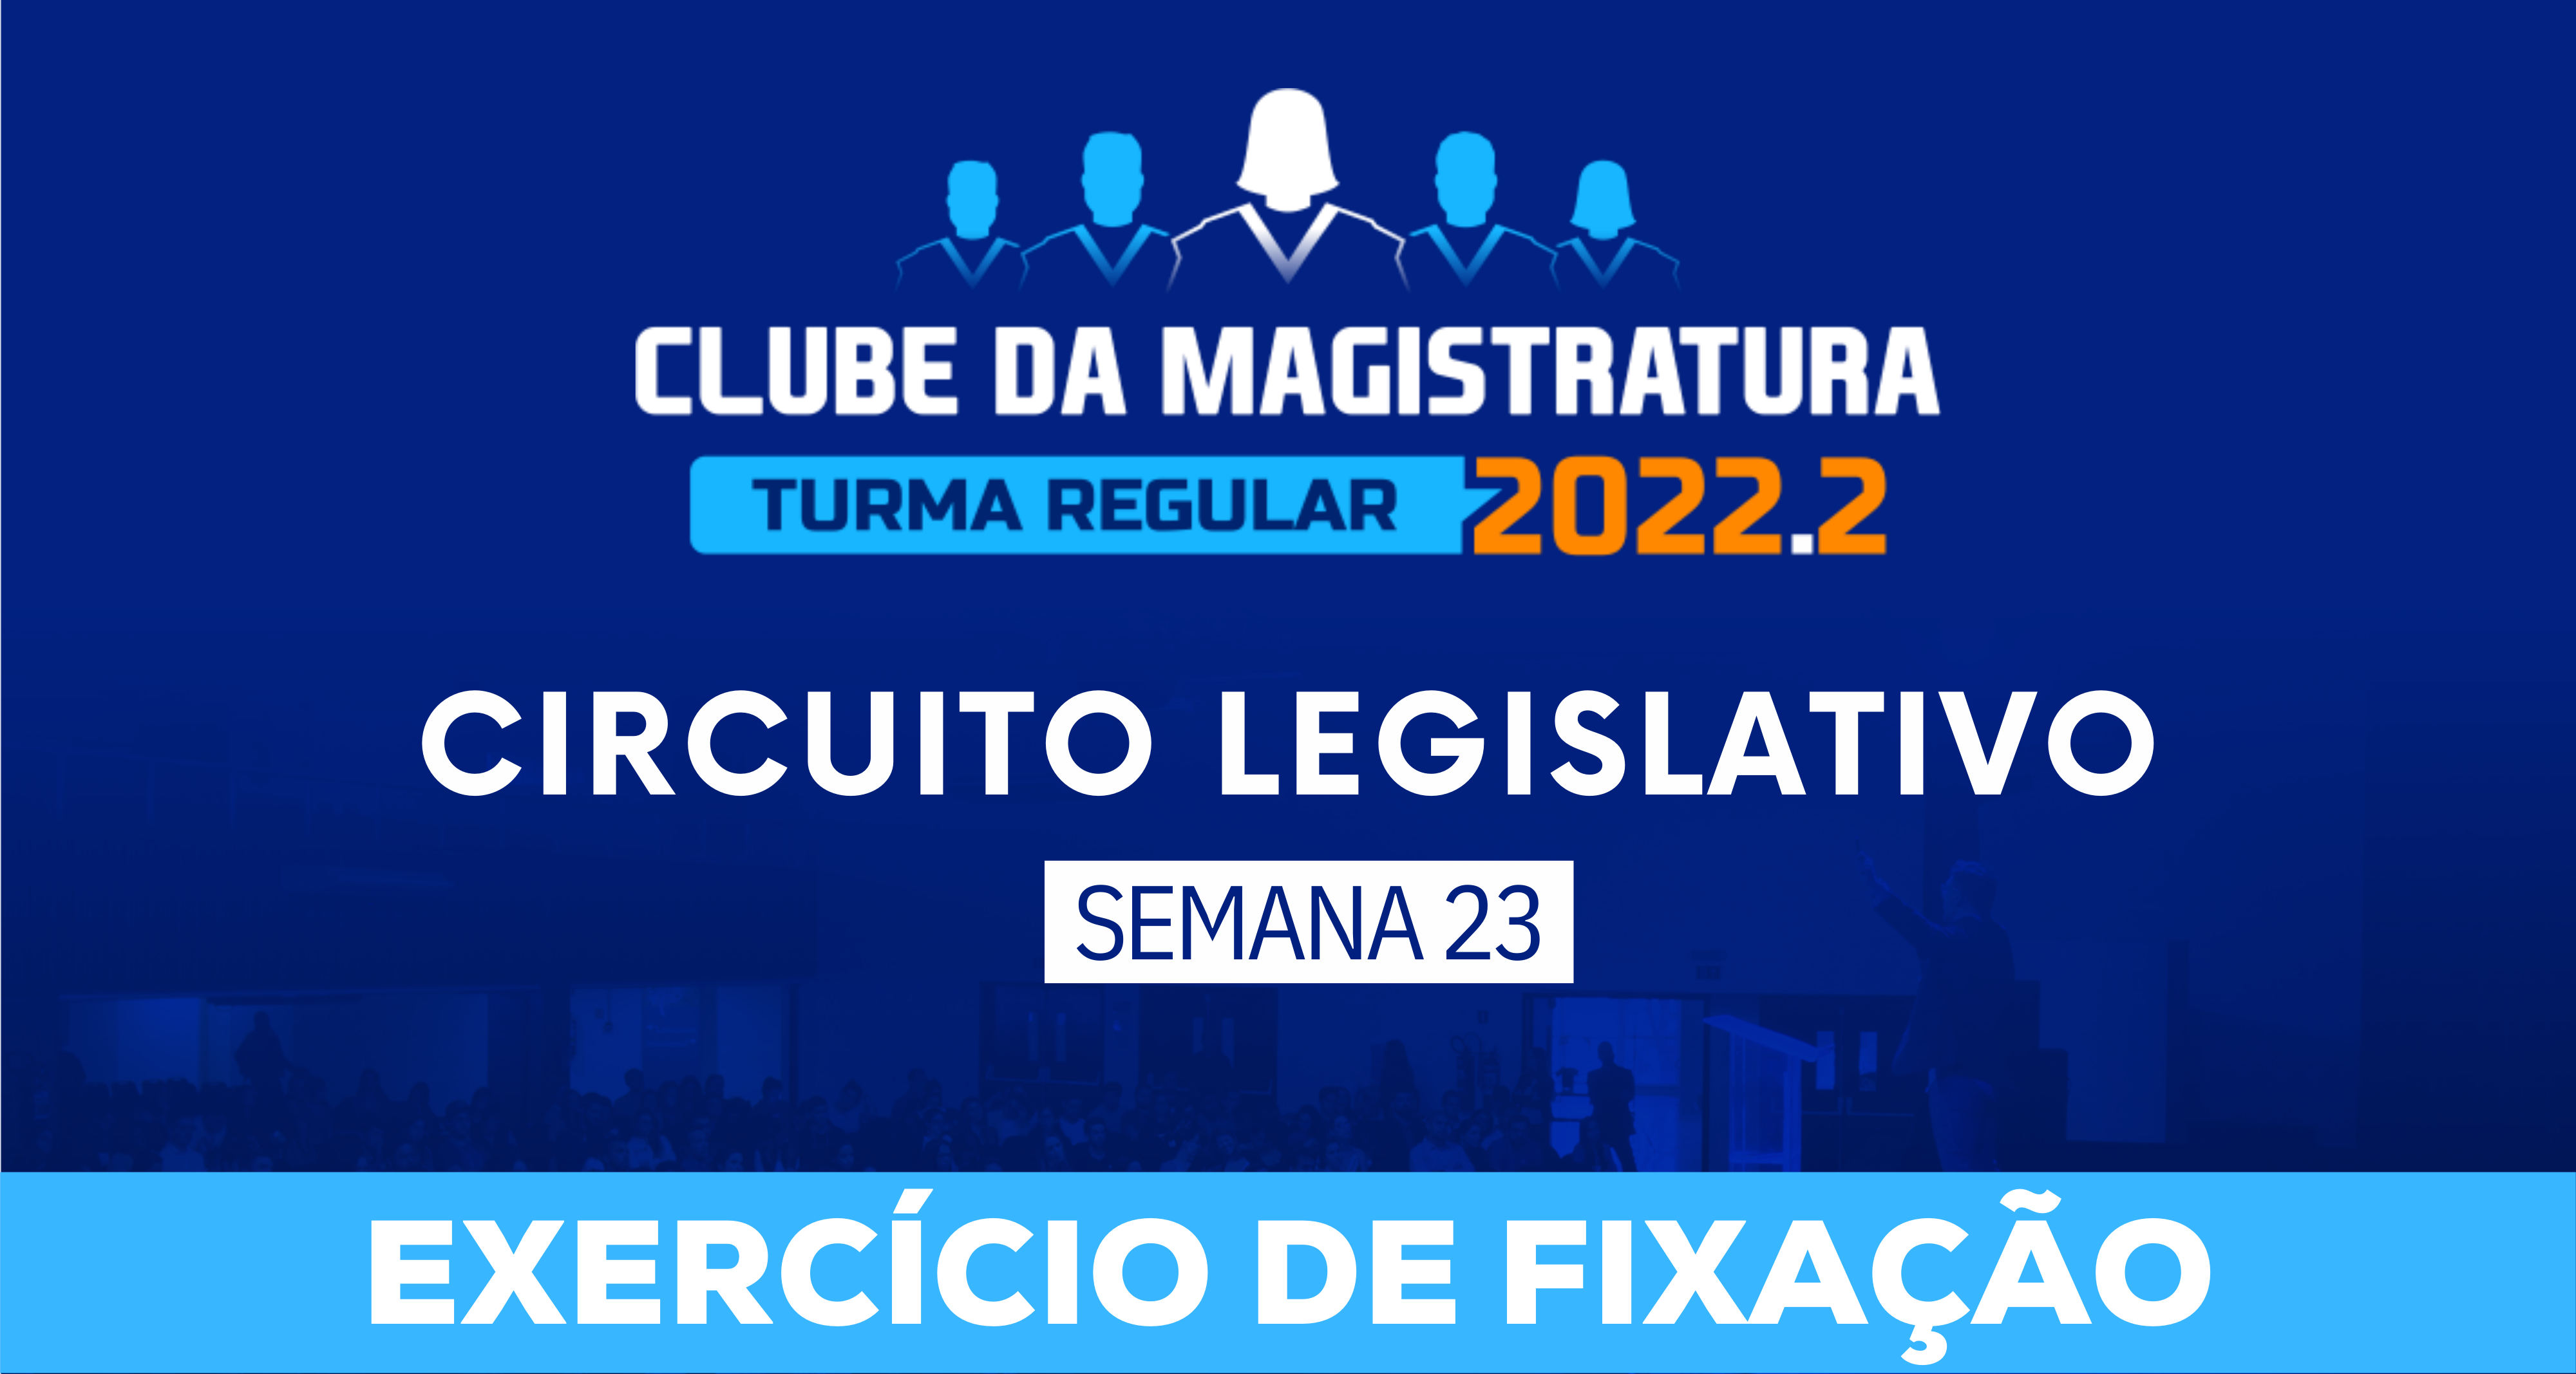 Circuito Legislativo 2022.2 (Clube da Magistratura - Semana 23)